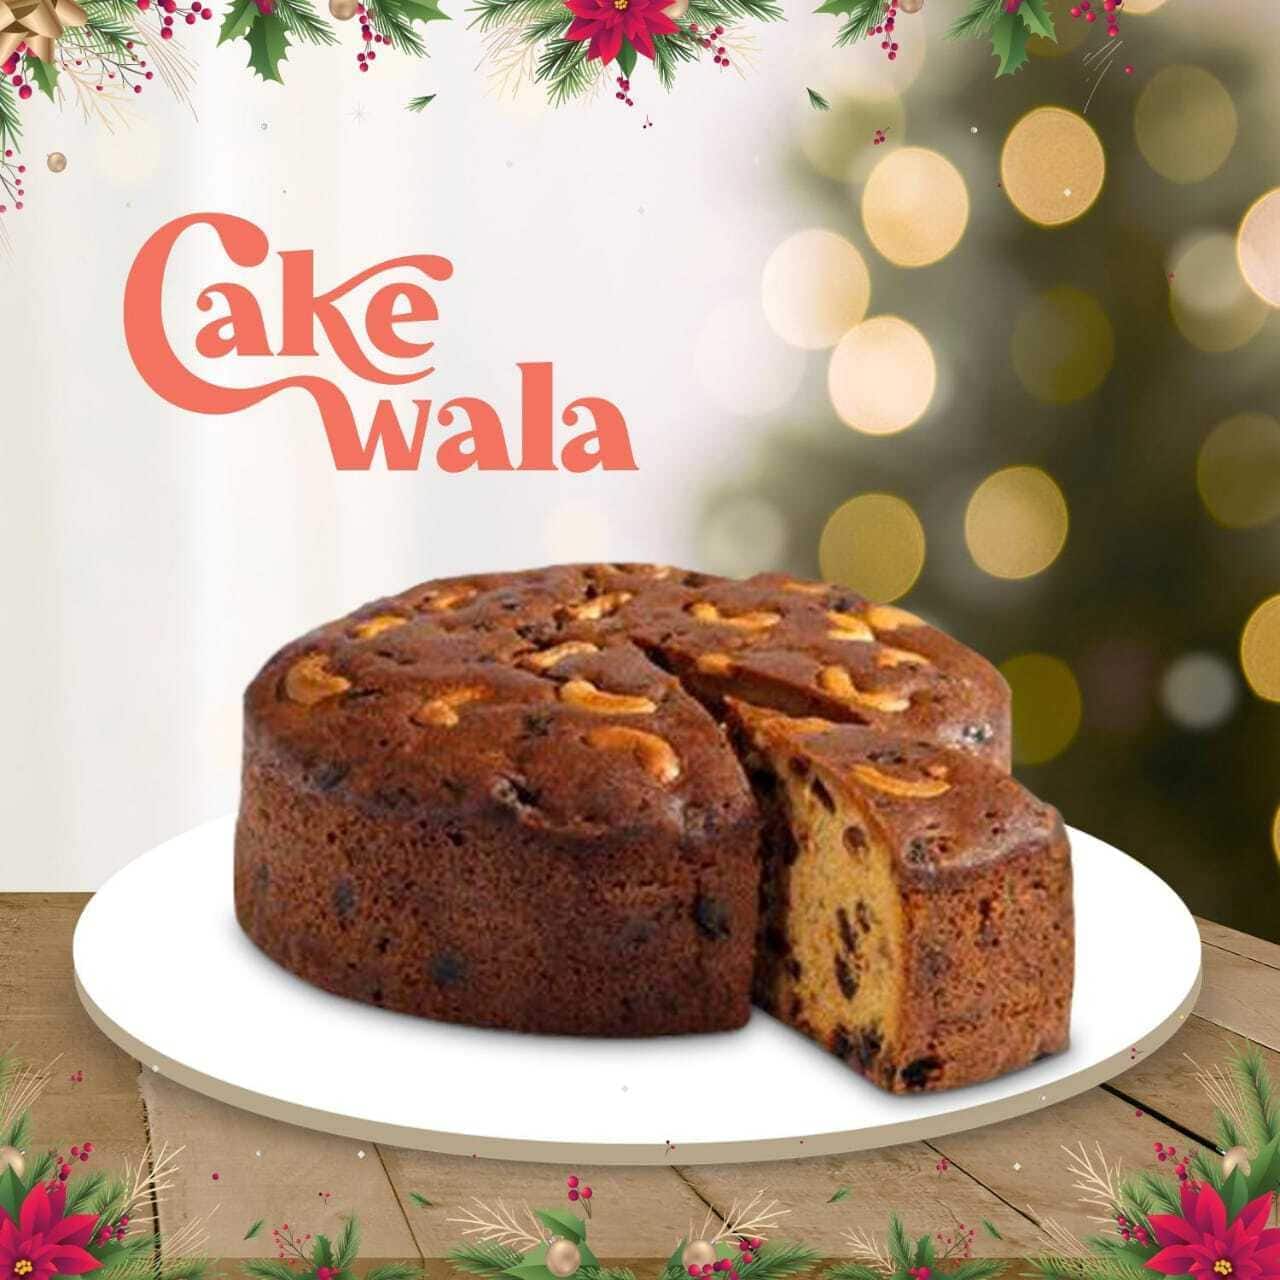 The cake wala - Bakery in Banuri